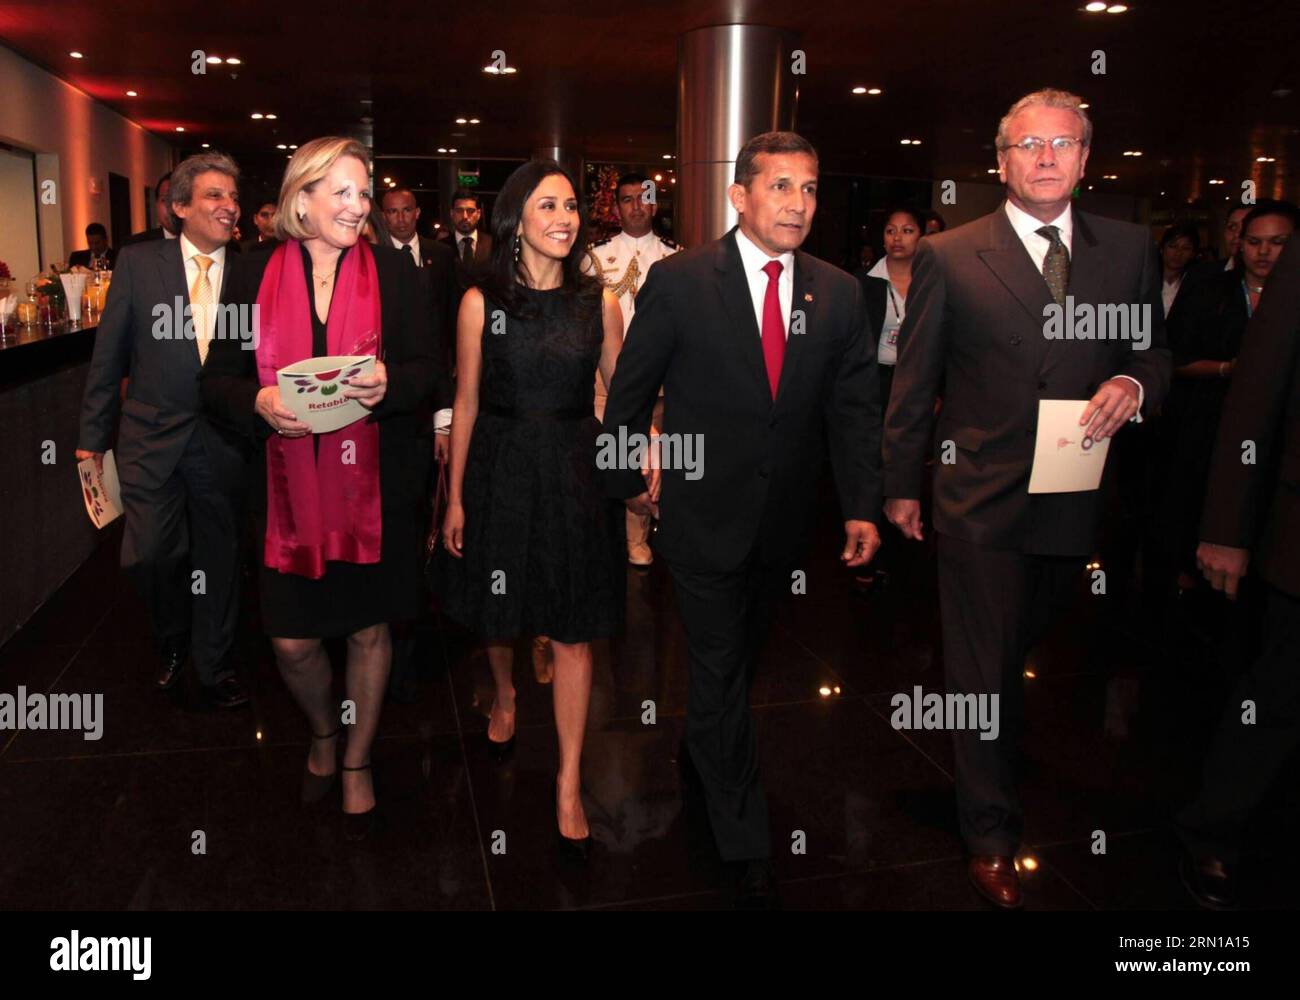 (141210) -- LIMA, presidente del Perù, Ollanta Humala (2°, R), partecipa al Gala culturale per i partecipanti alla 20a Conferenza delle Nazioni Unite sui cambiamenti climatici (COP20) al National Grand Theater di Lima, in Perù, il 9 dicembre 2014. Melina Mej¨ªa/ANDINA) (rhj) (lmz) PERÙ-LIMA-COP20-GALA-OLLANTA HUMALA e ANDINA PUBLICATIONxNOTxINxCHN Lima il presidente del Perù Ollanta Humala 2 r partecipa al Gala culturale per i partecipanti alla 20a Conferenza delle Nazioni Unite SUI cambiamenti CLIMATICI AL Gran Teatro Nazionale di Lima in Perù IL 9 dicembre 2014 Melina Andina Perù Lima Lima Lima gala Foto Stock